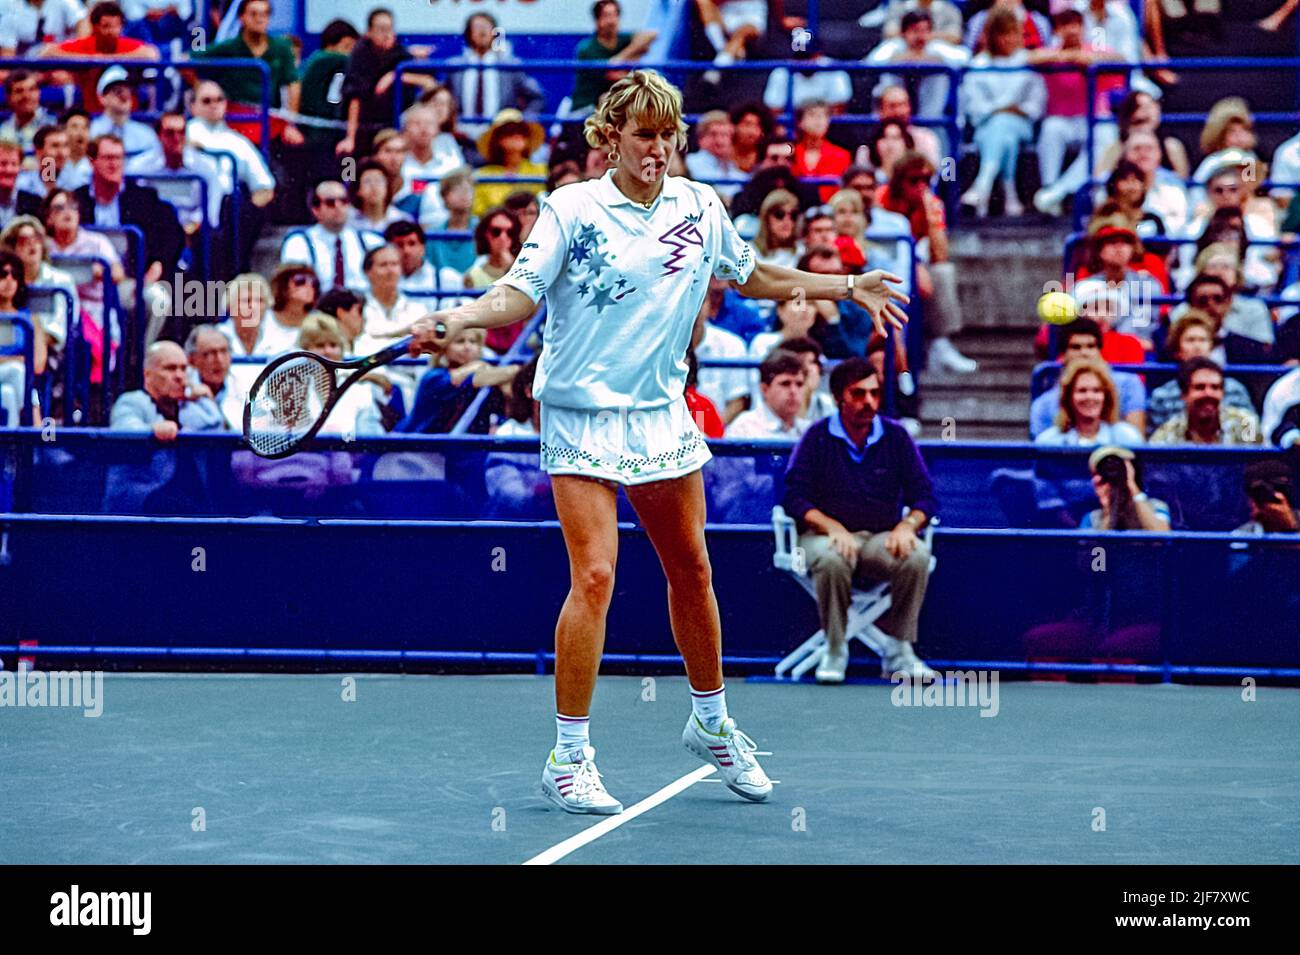 Steffi Graf (GER) compitiendo en el US Open de tenis 1987. Foto de stock